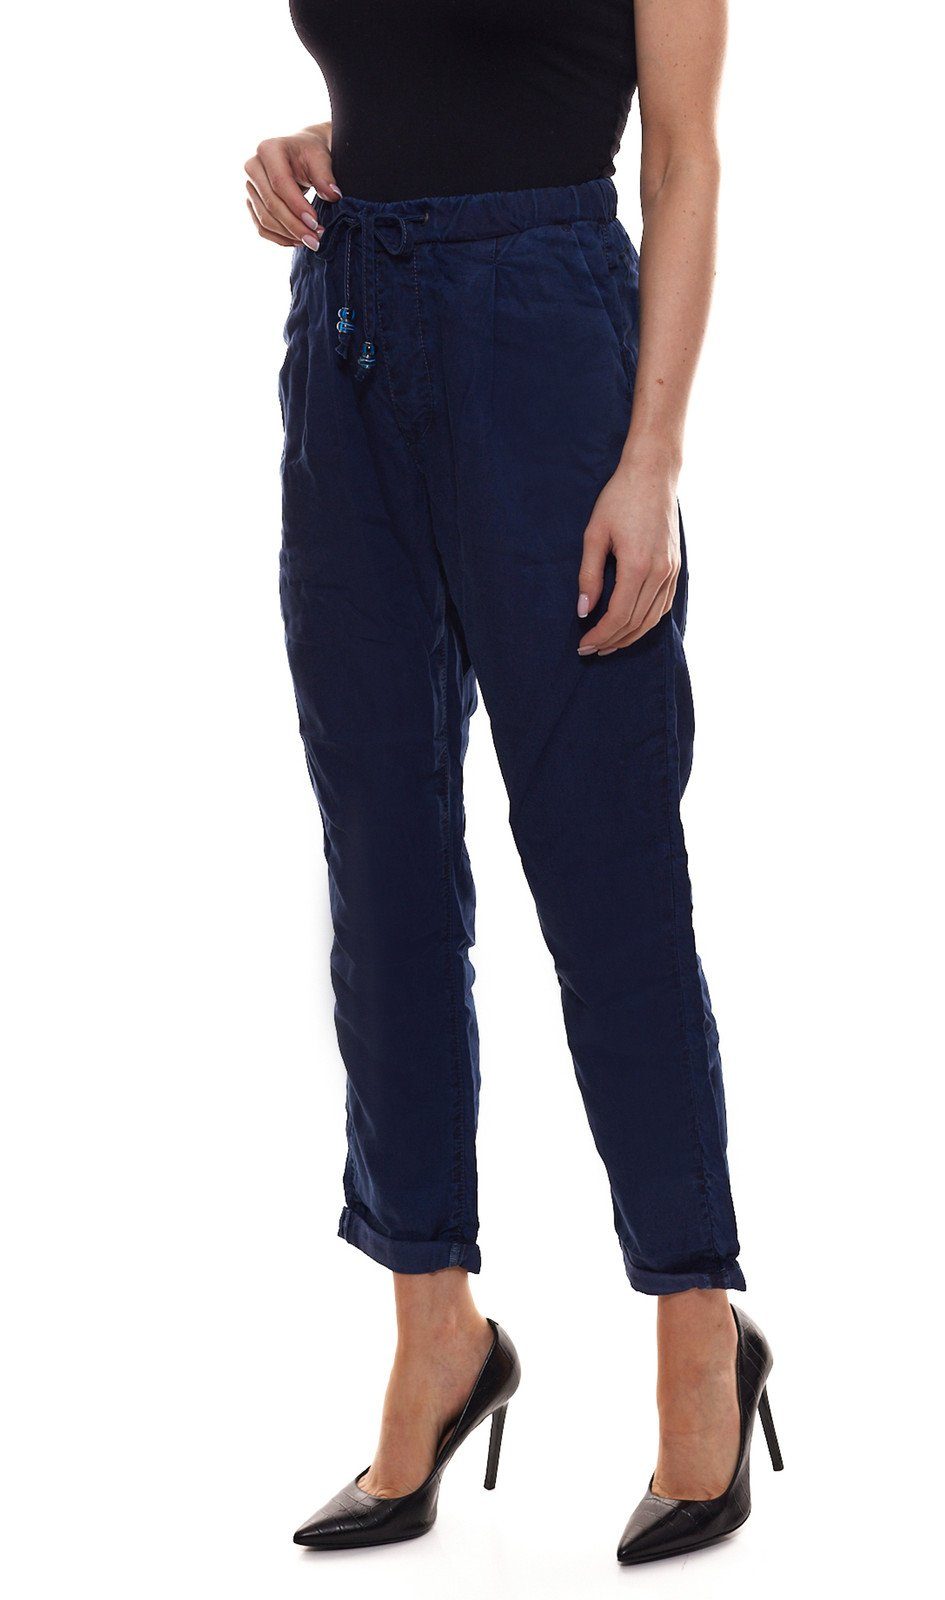 Sommer-Hose Jeans-Stil Pepe Business-Hose Blue Damen Stoff-Hose bequeme Pepe Blau Donna im Jeans Stoffhose Jeans